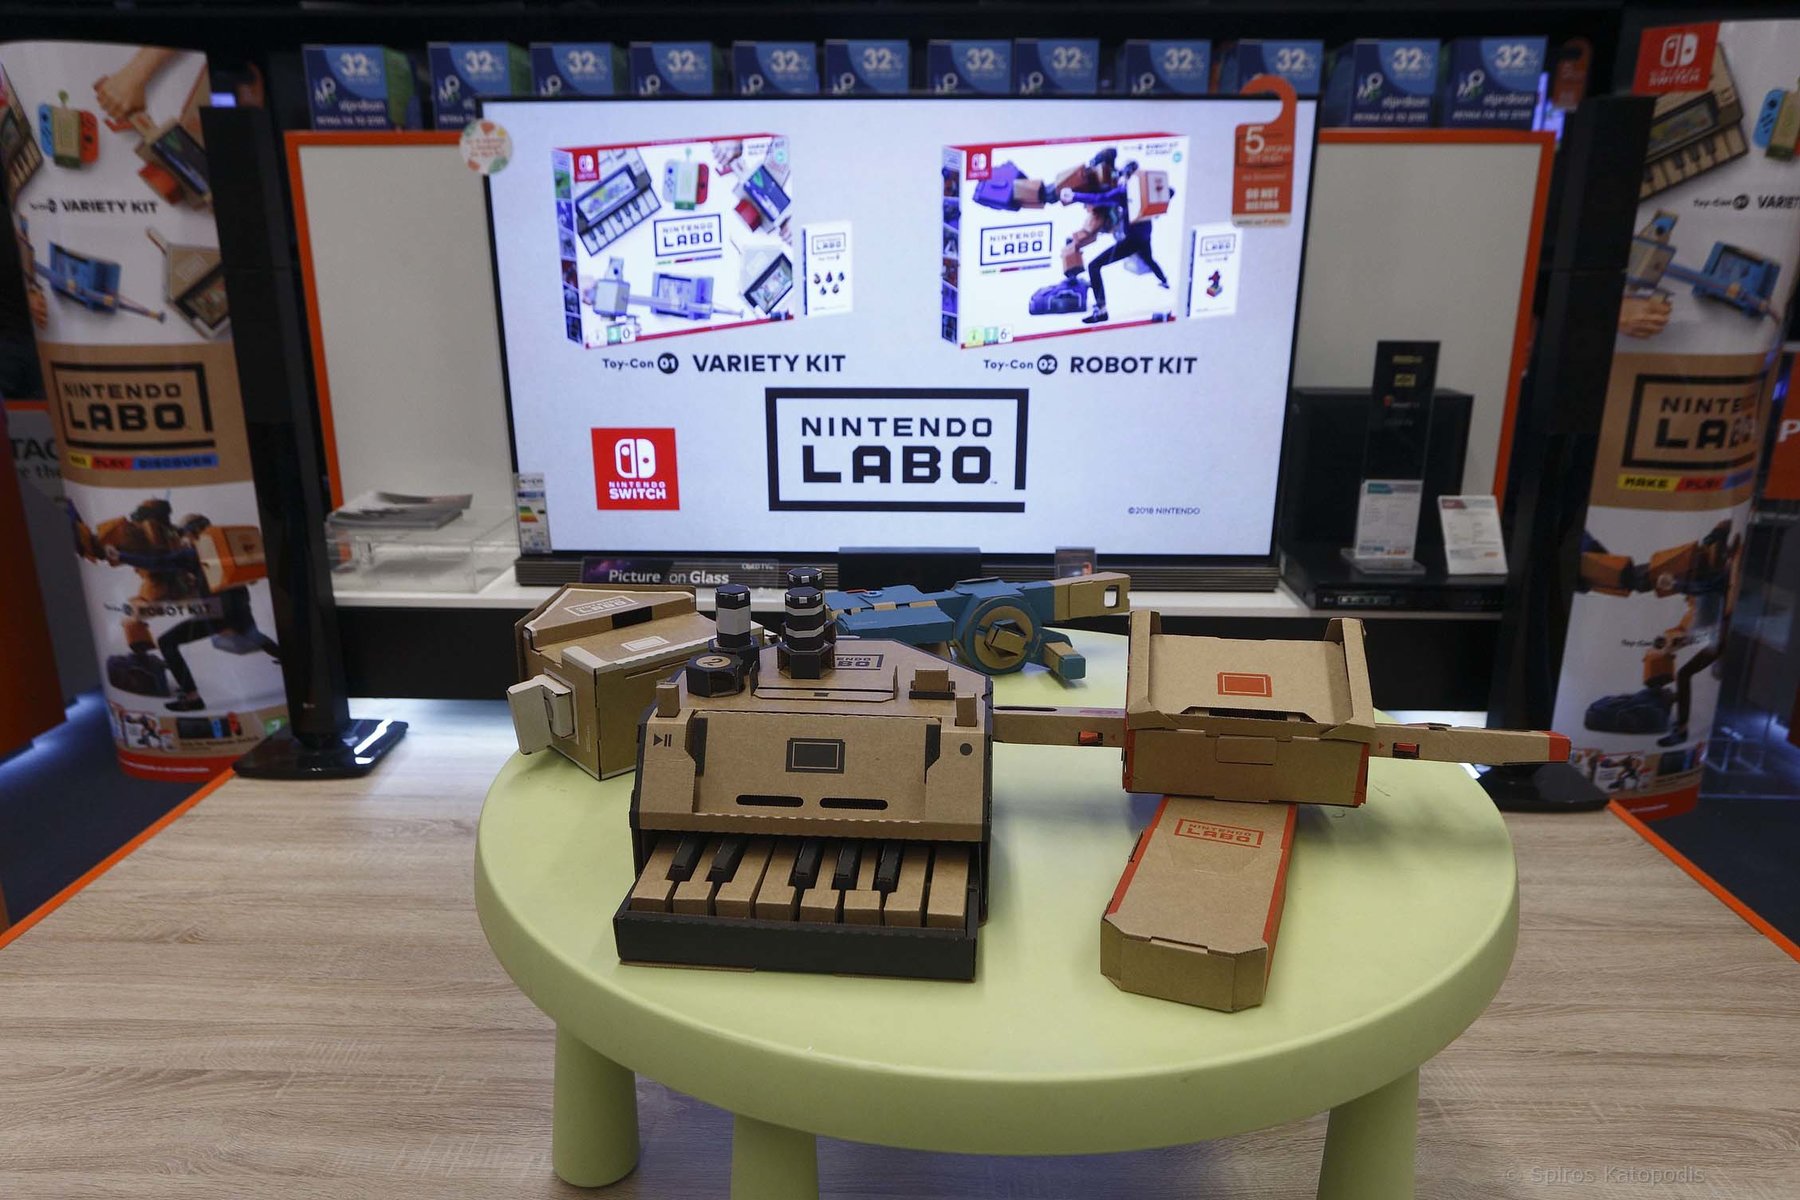 Δοκιμάσαμε το Nintendo Labo και είδαμε πως το gaming γίνεται DIY!